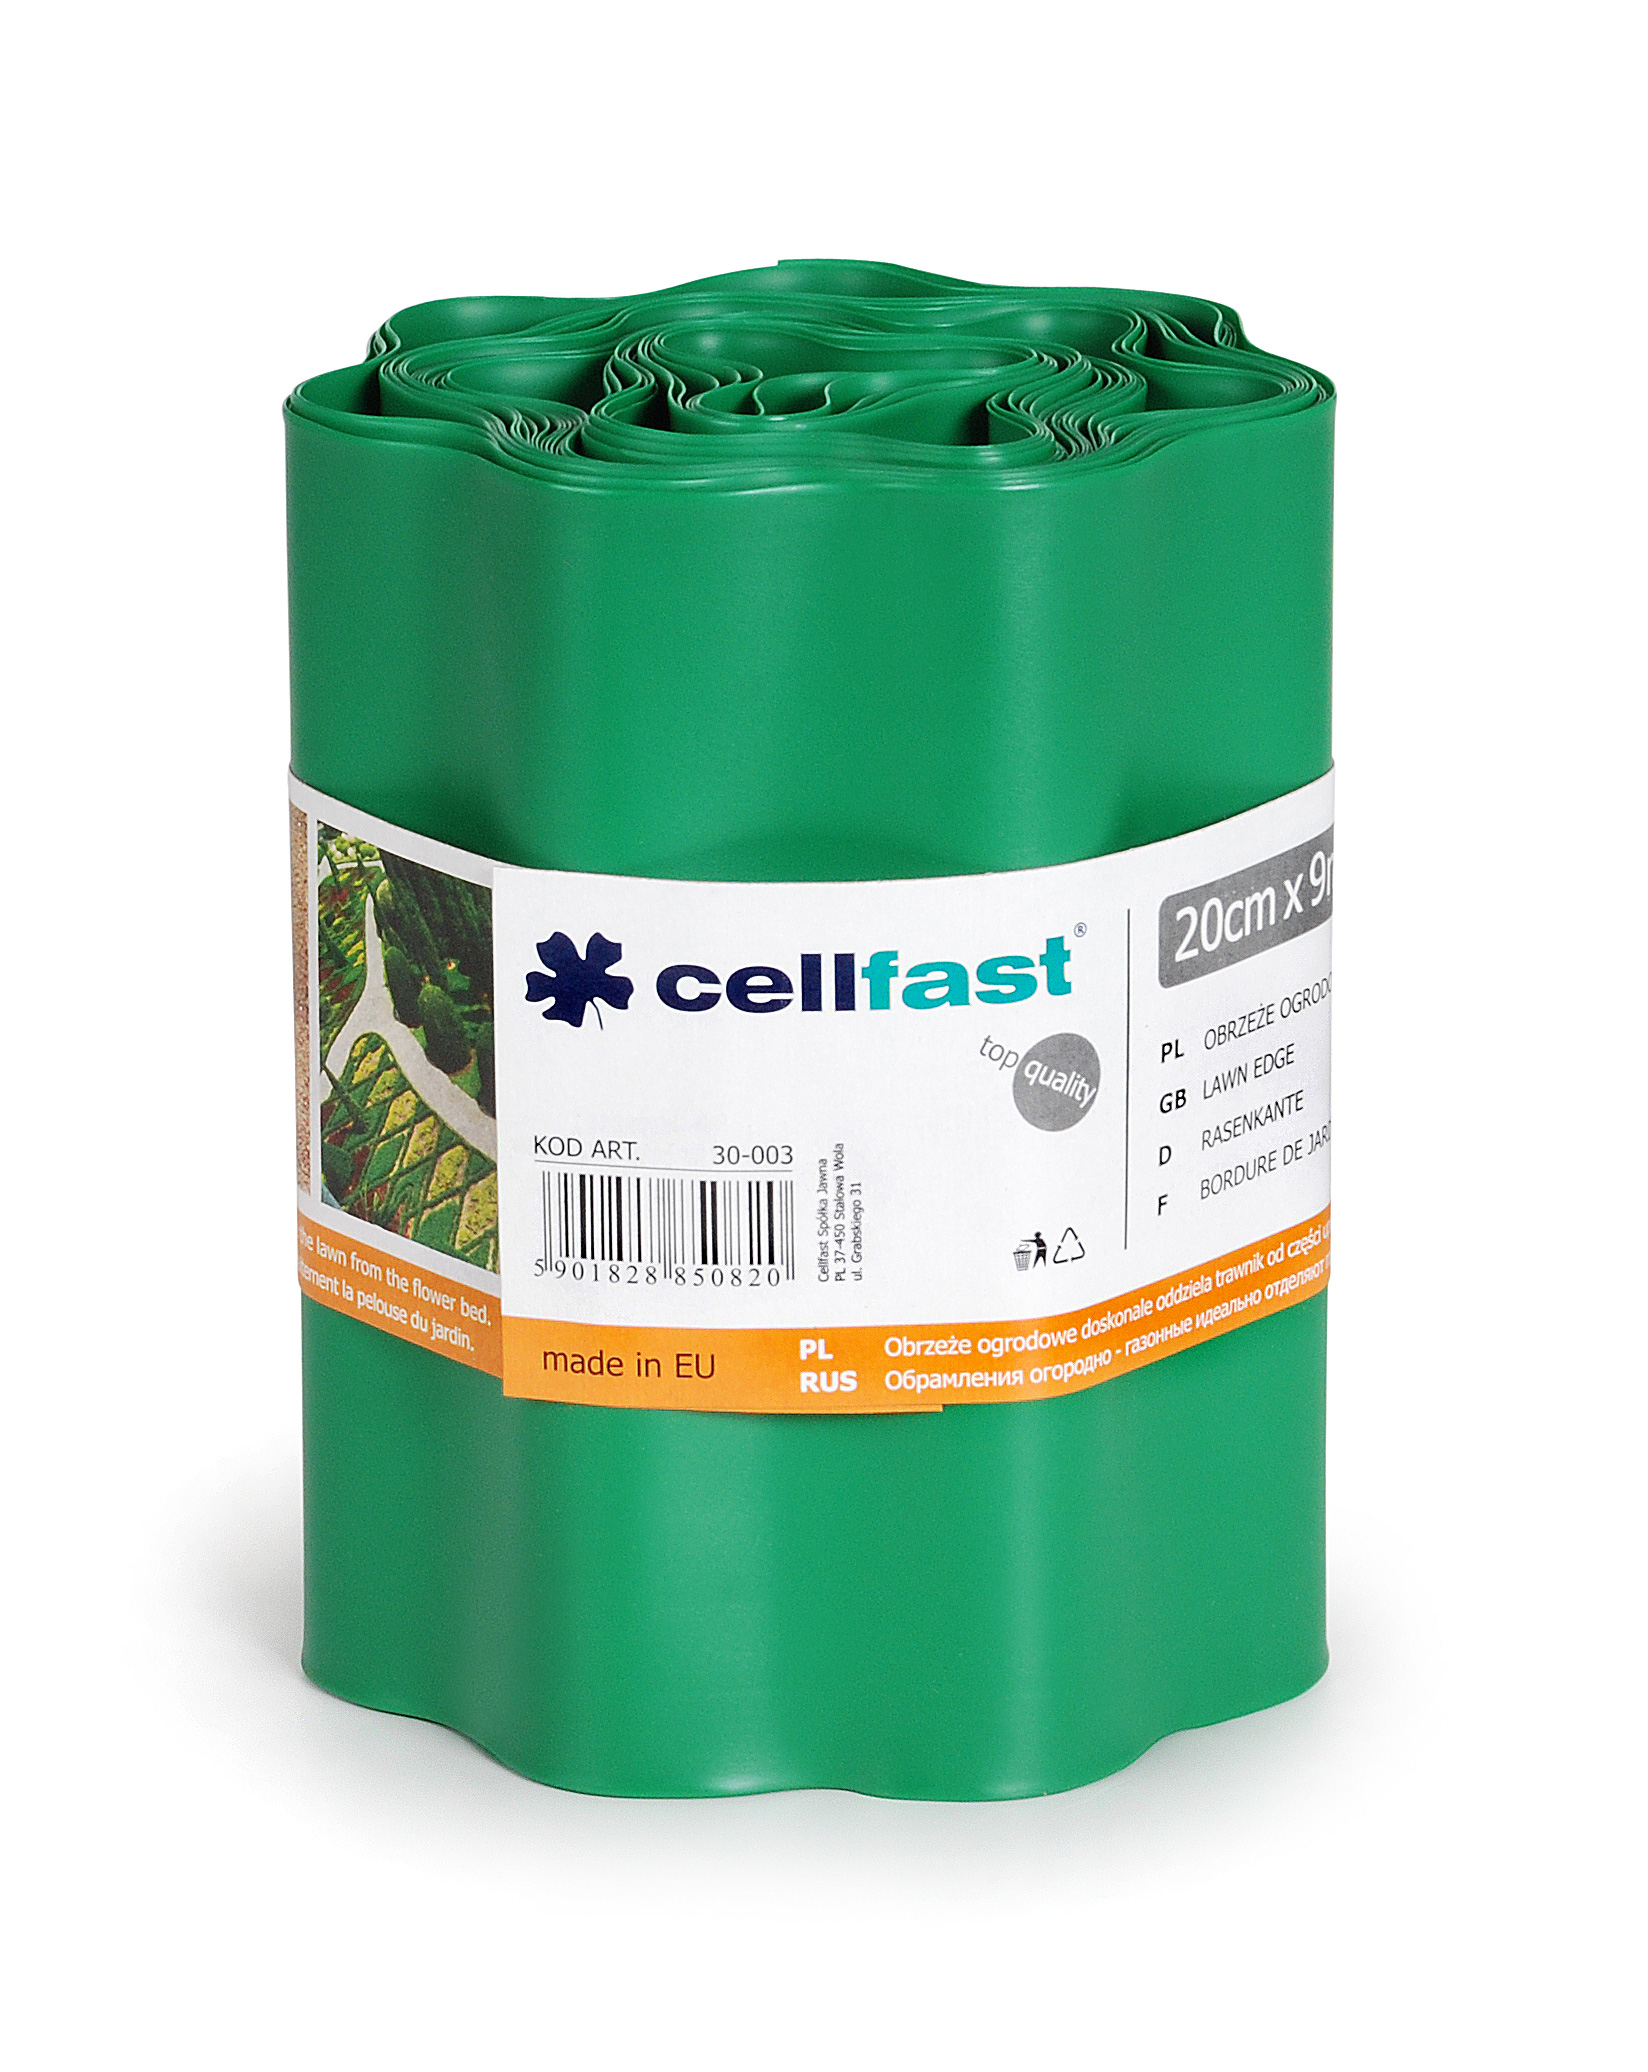 Cellfast Obrzeze ogrodowe zielen 20cm x 9m 30-003 989982 (5901828850820)